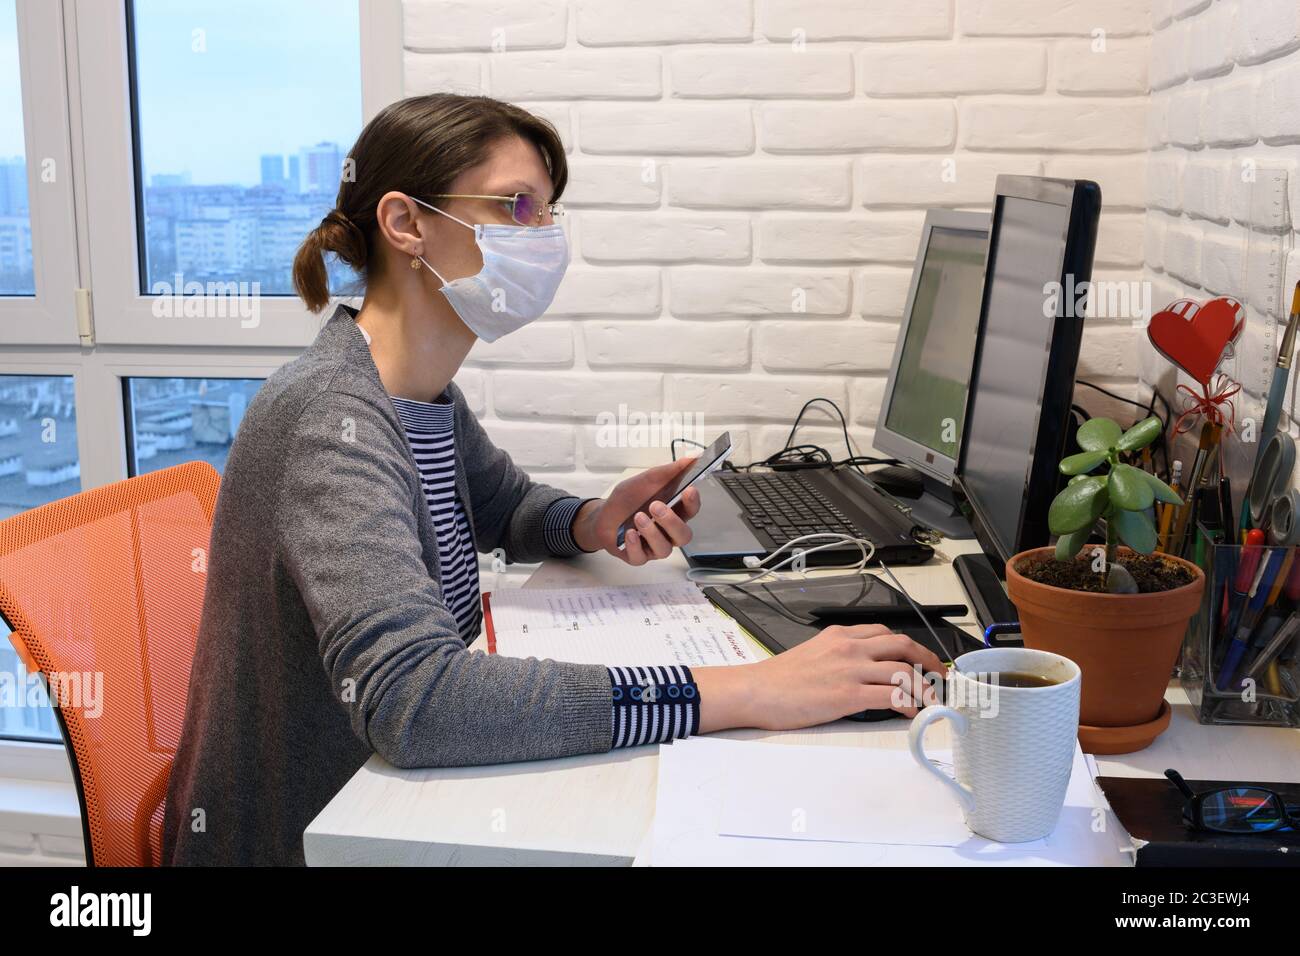 Una niña enferma en una máscara médica en auto-aislamiento trabaja remotamente Foto de stock